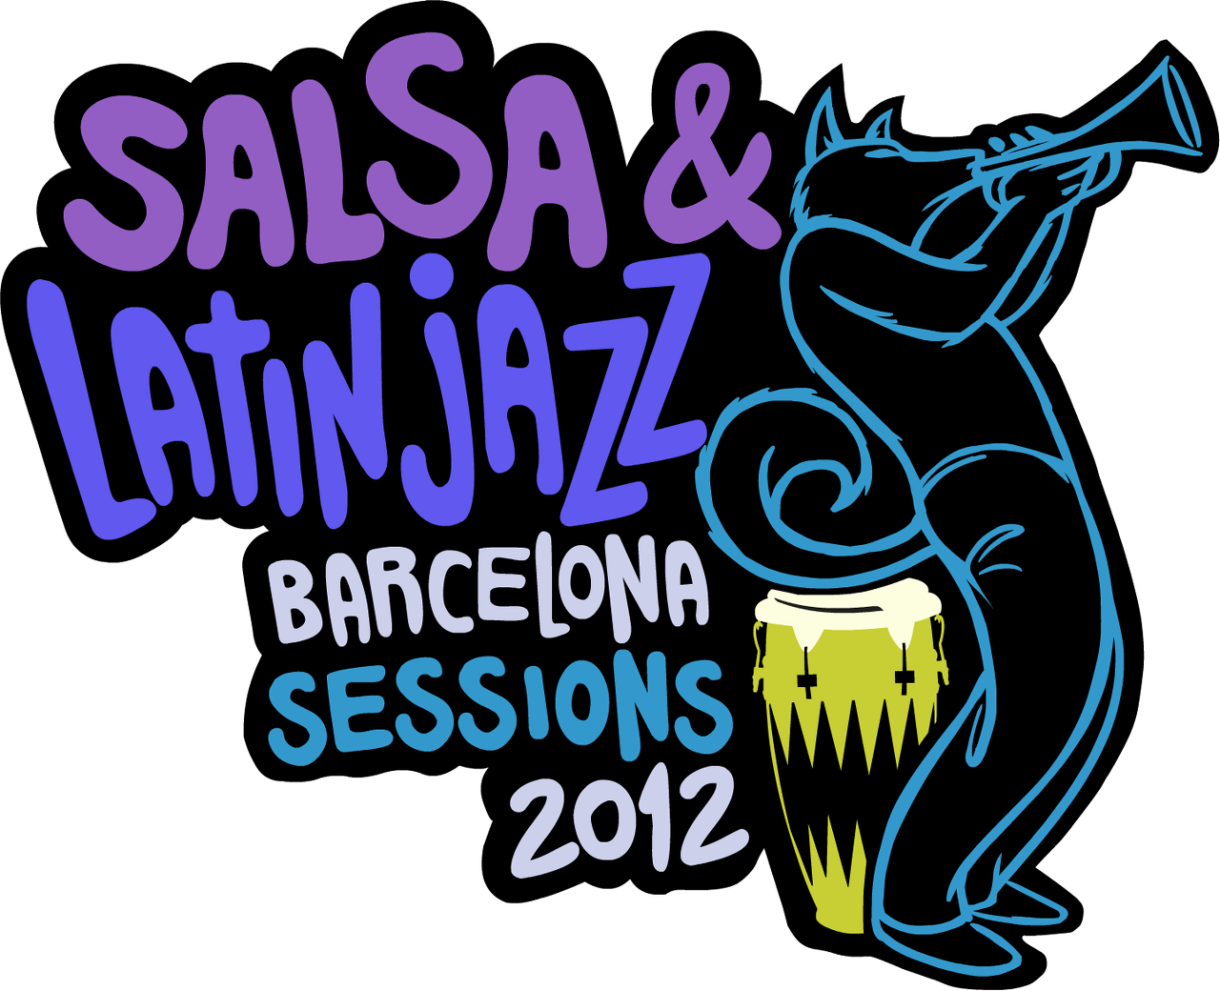 Vuelven los ritmos latinos este verano con el ‘Salsa & Latin Jazz Festival 2012’